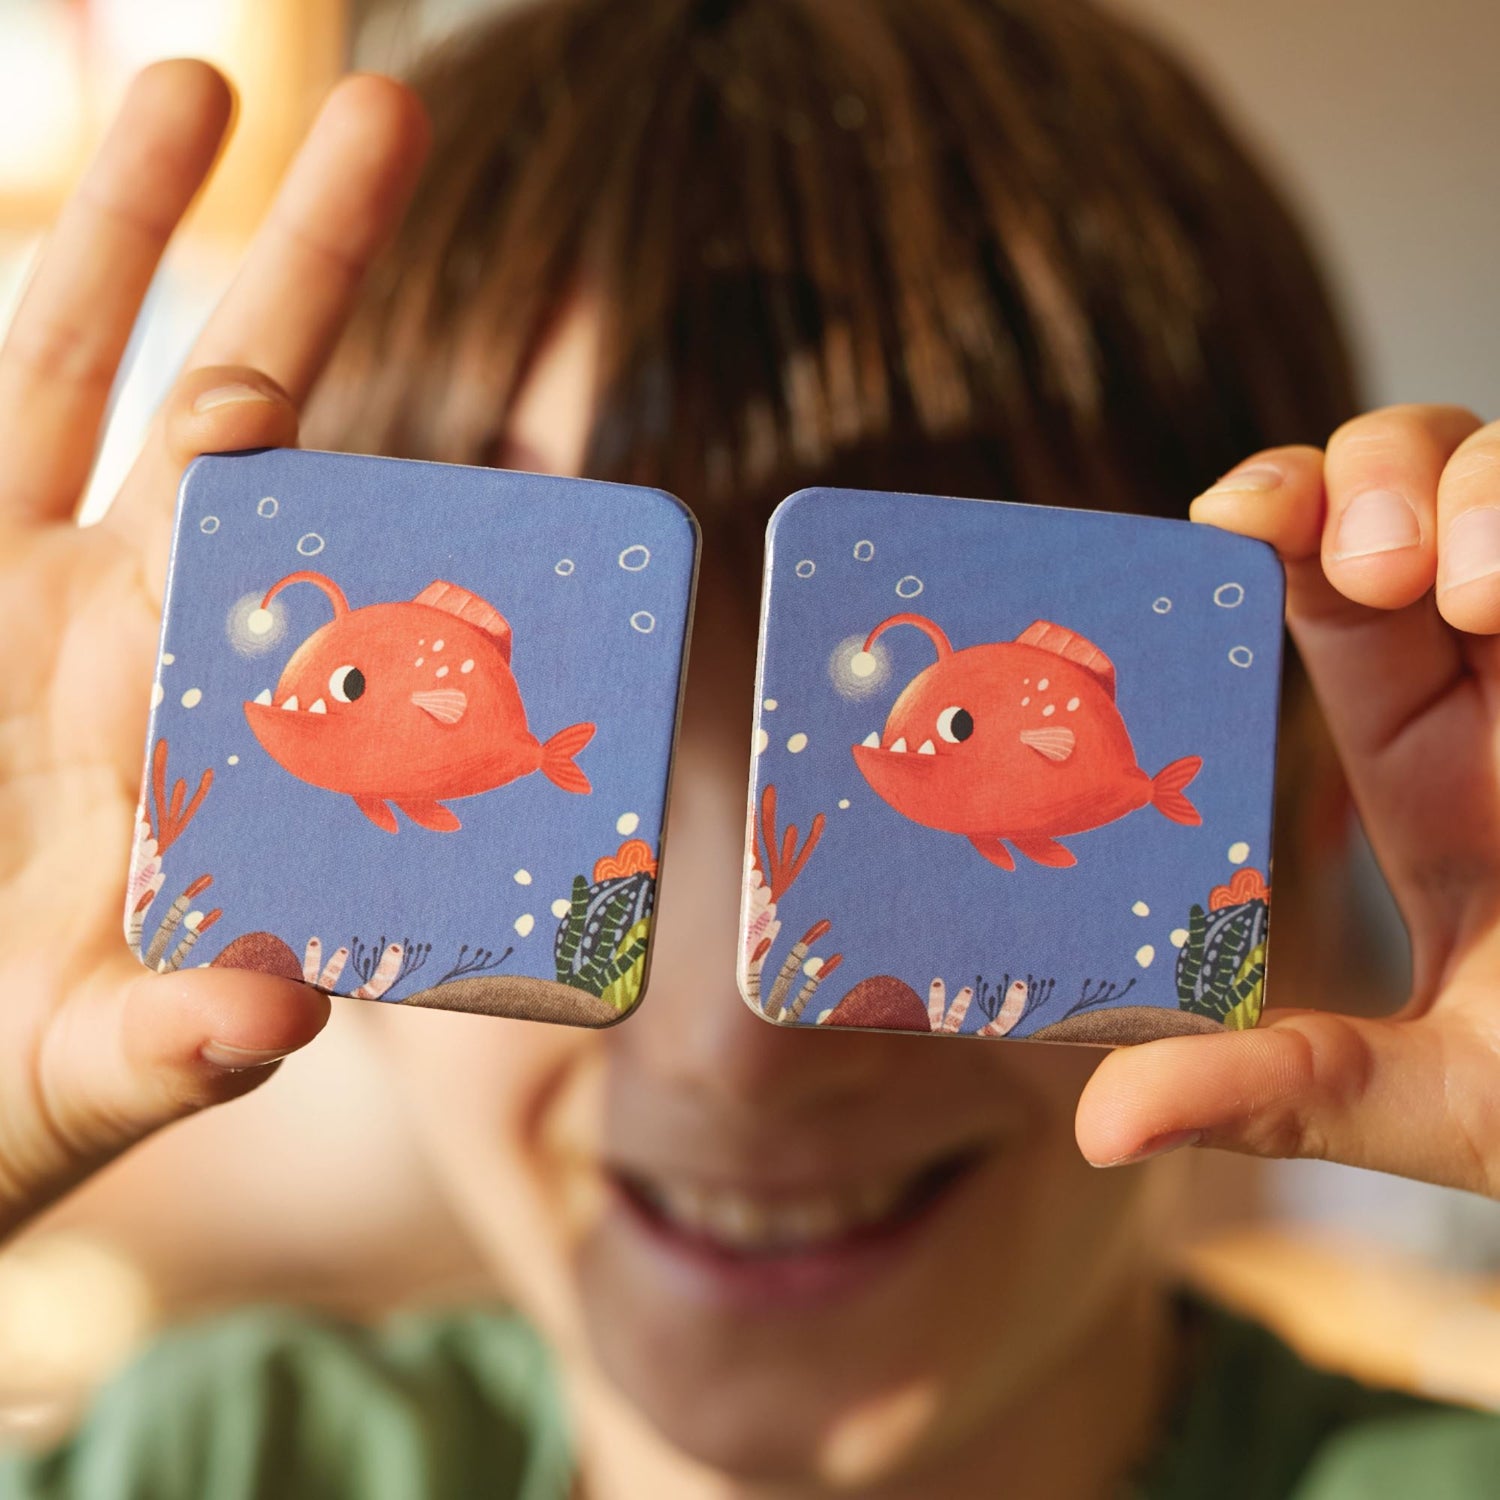 Memory Card Game 42 Kartlı Hafıza ve Eşleştirme Oyunu: Su altı moritoys 